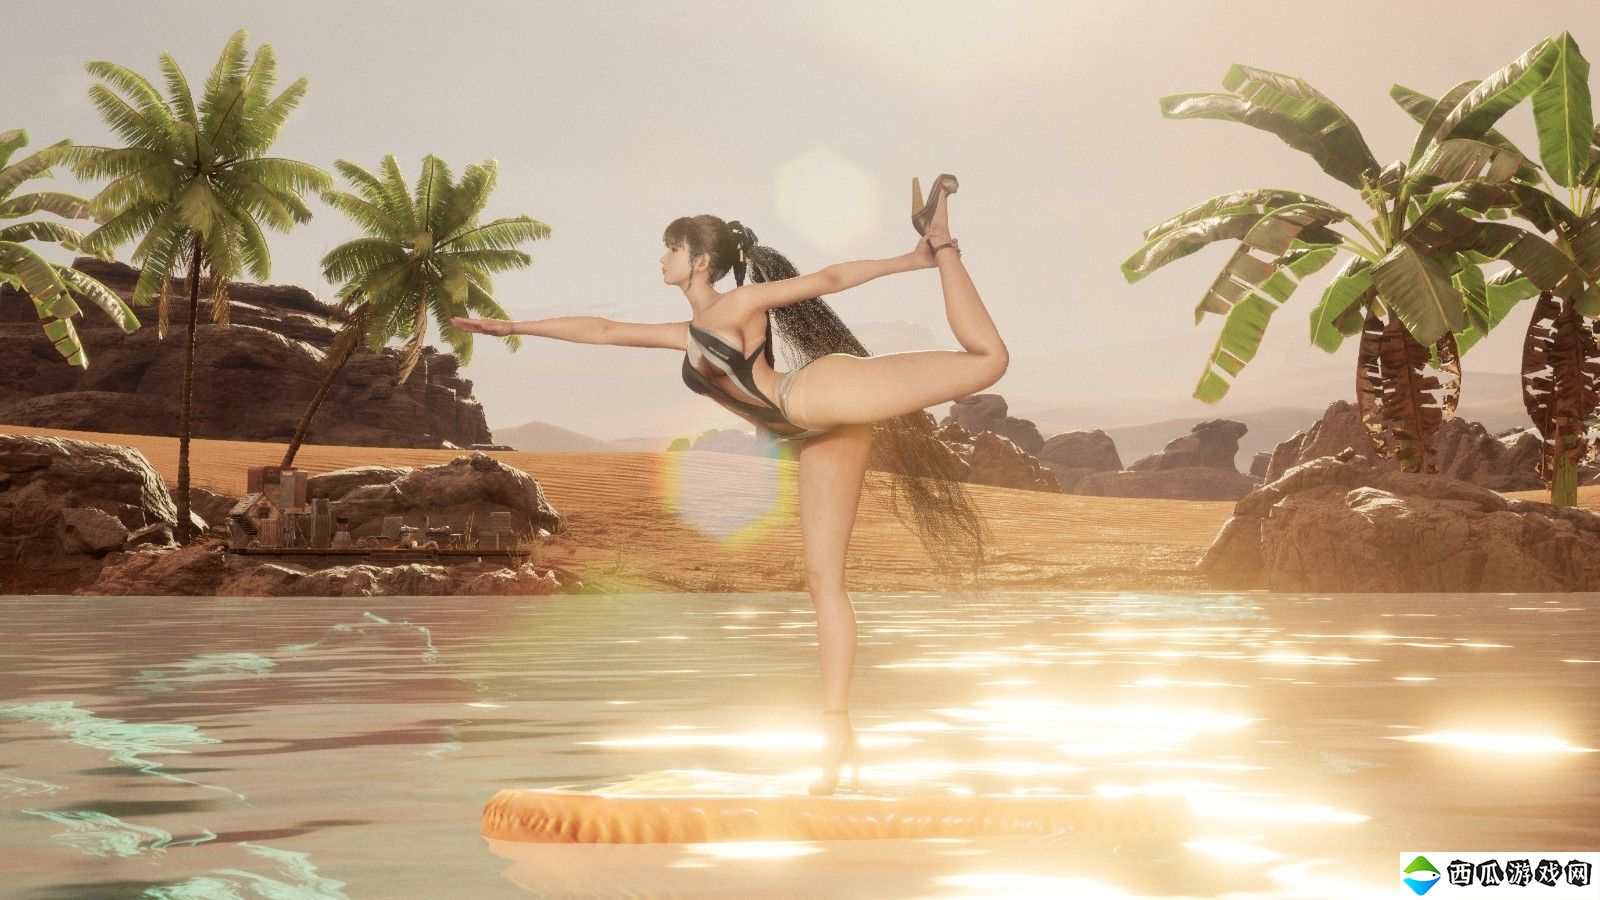 《星刃》官方分享拍照模式截图 伊芙穿泳衣练瑜伽